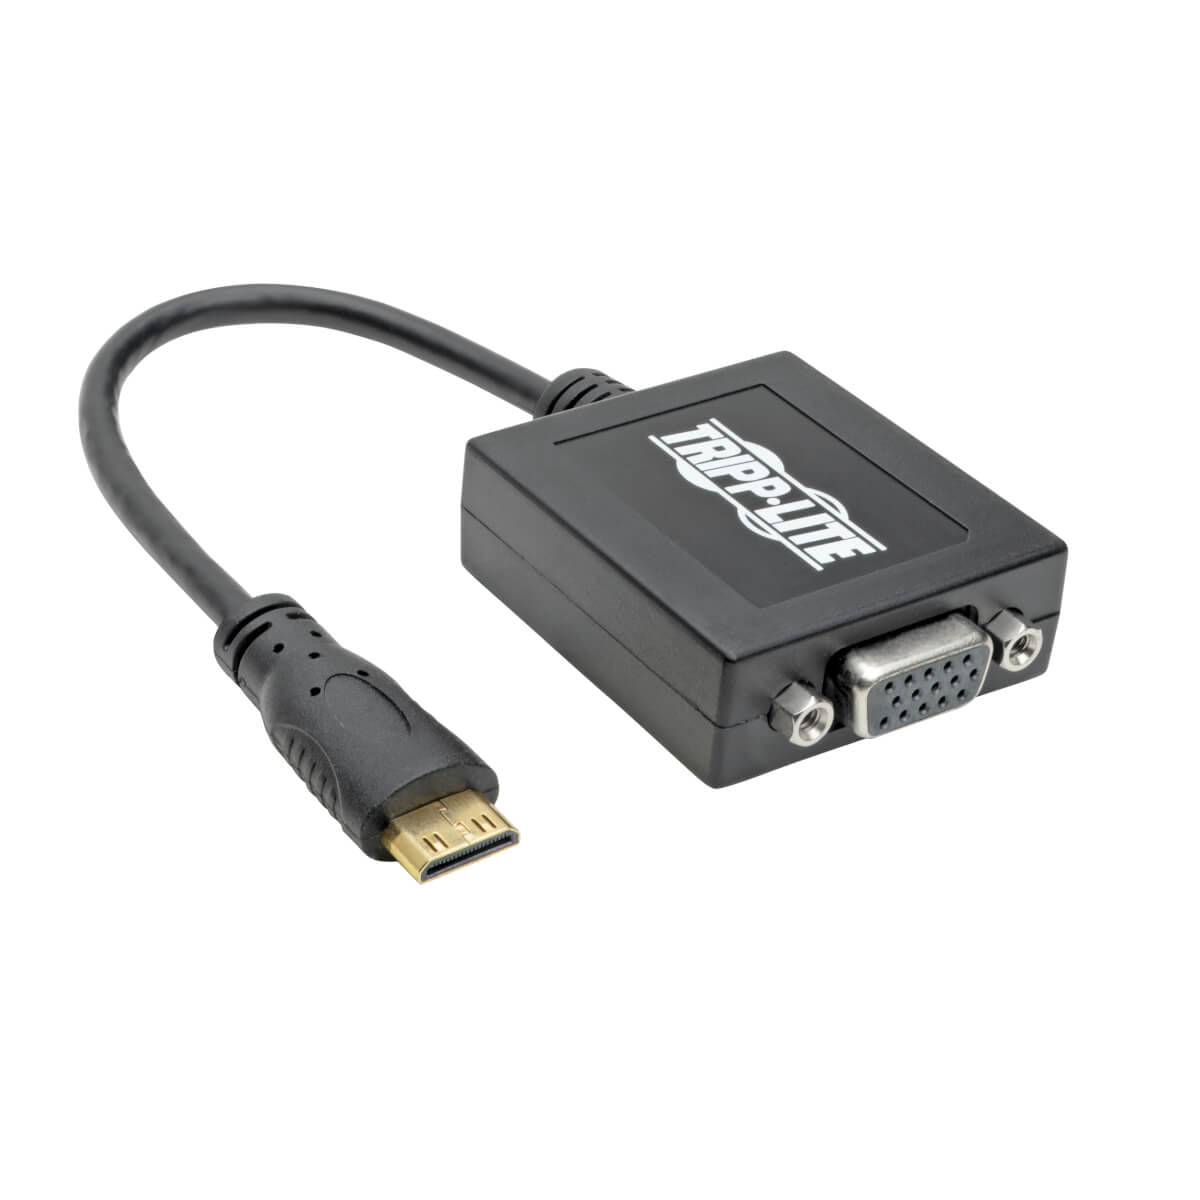 Tripp Lite P131-06N-Mini Mini Hdmi To Vga Adapter Video Converter, (M/F), 6-In. (15.24 Cm)